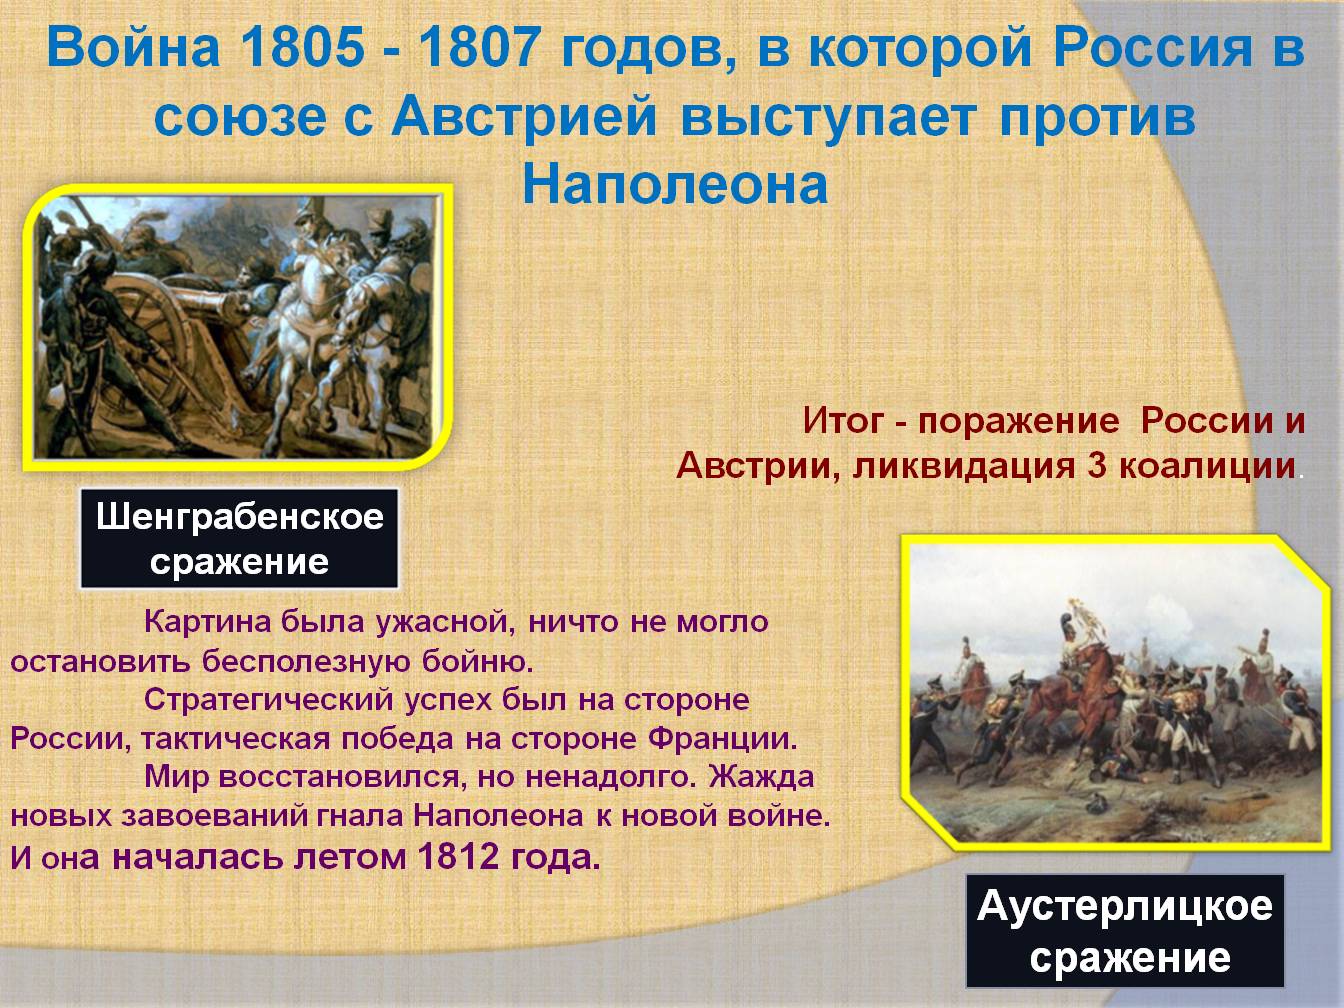 Наполеон союз с россией. Командующий в русско французской войне 1805-1807. Сражения войны 1805 1807 года. 1805-1807 Год в истории России.